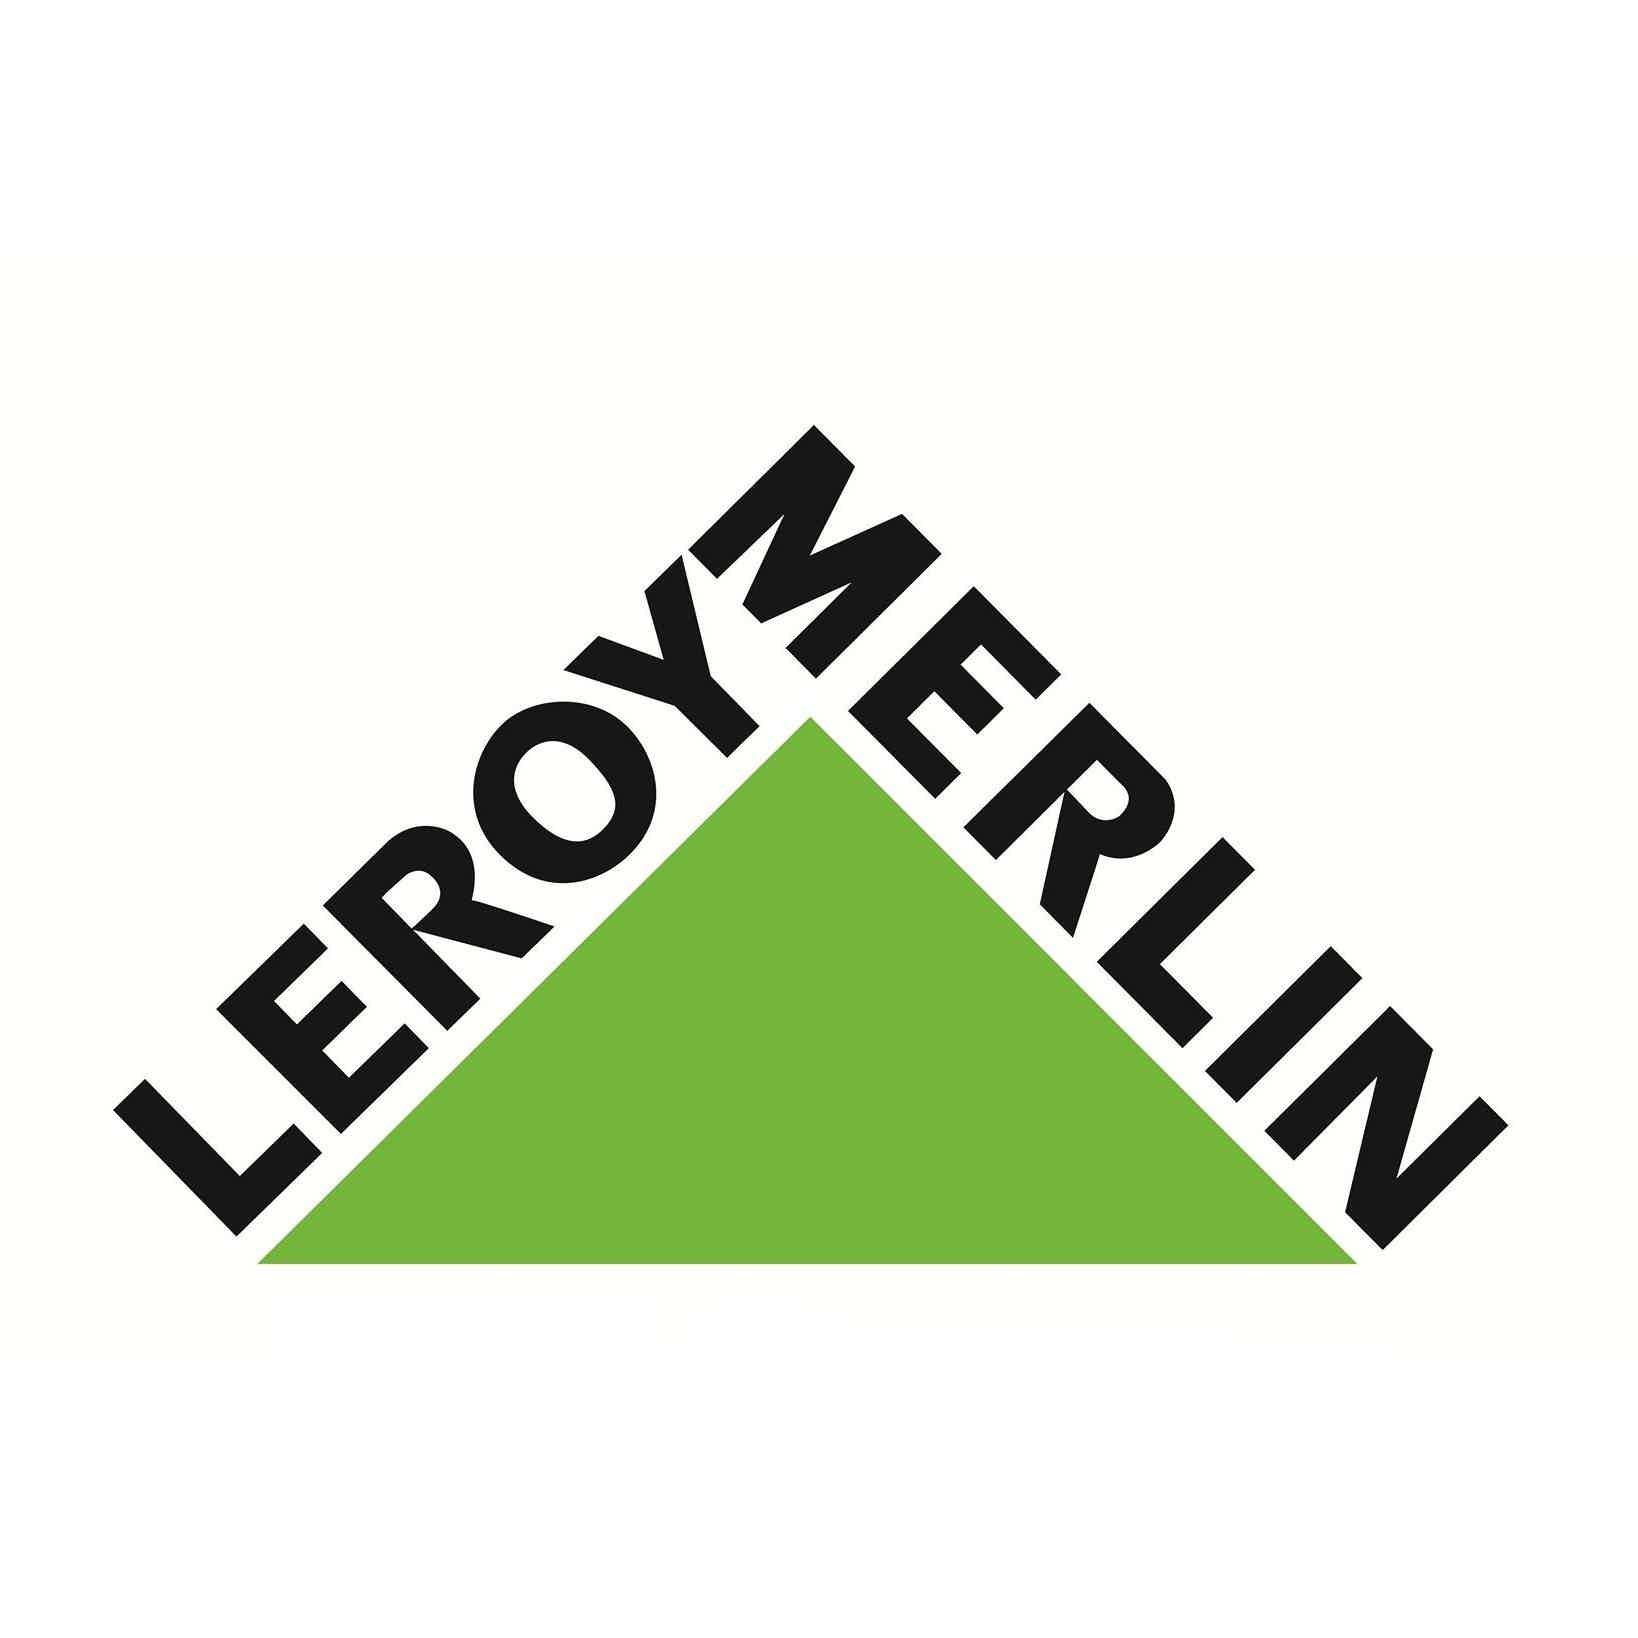 Afinal, quais as vantagens do financiamento Leroy? Fonte: Leroy Merlin.